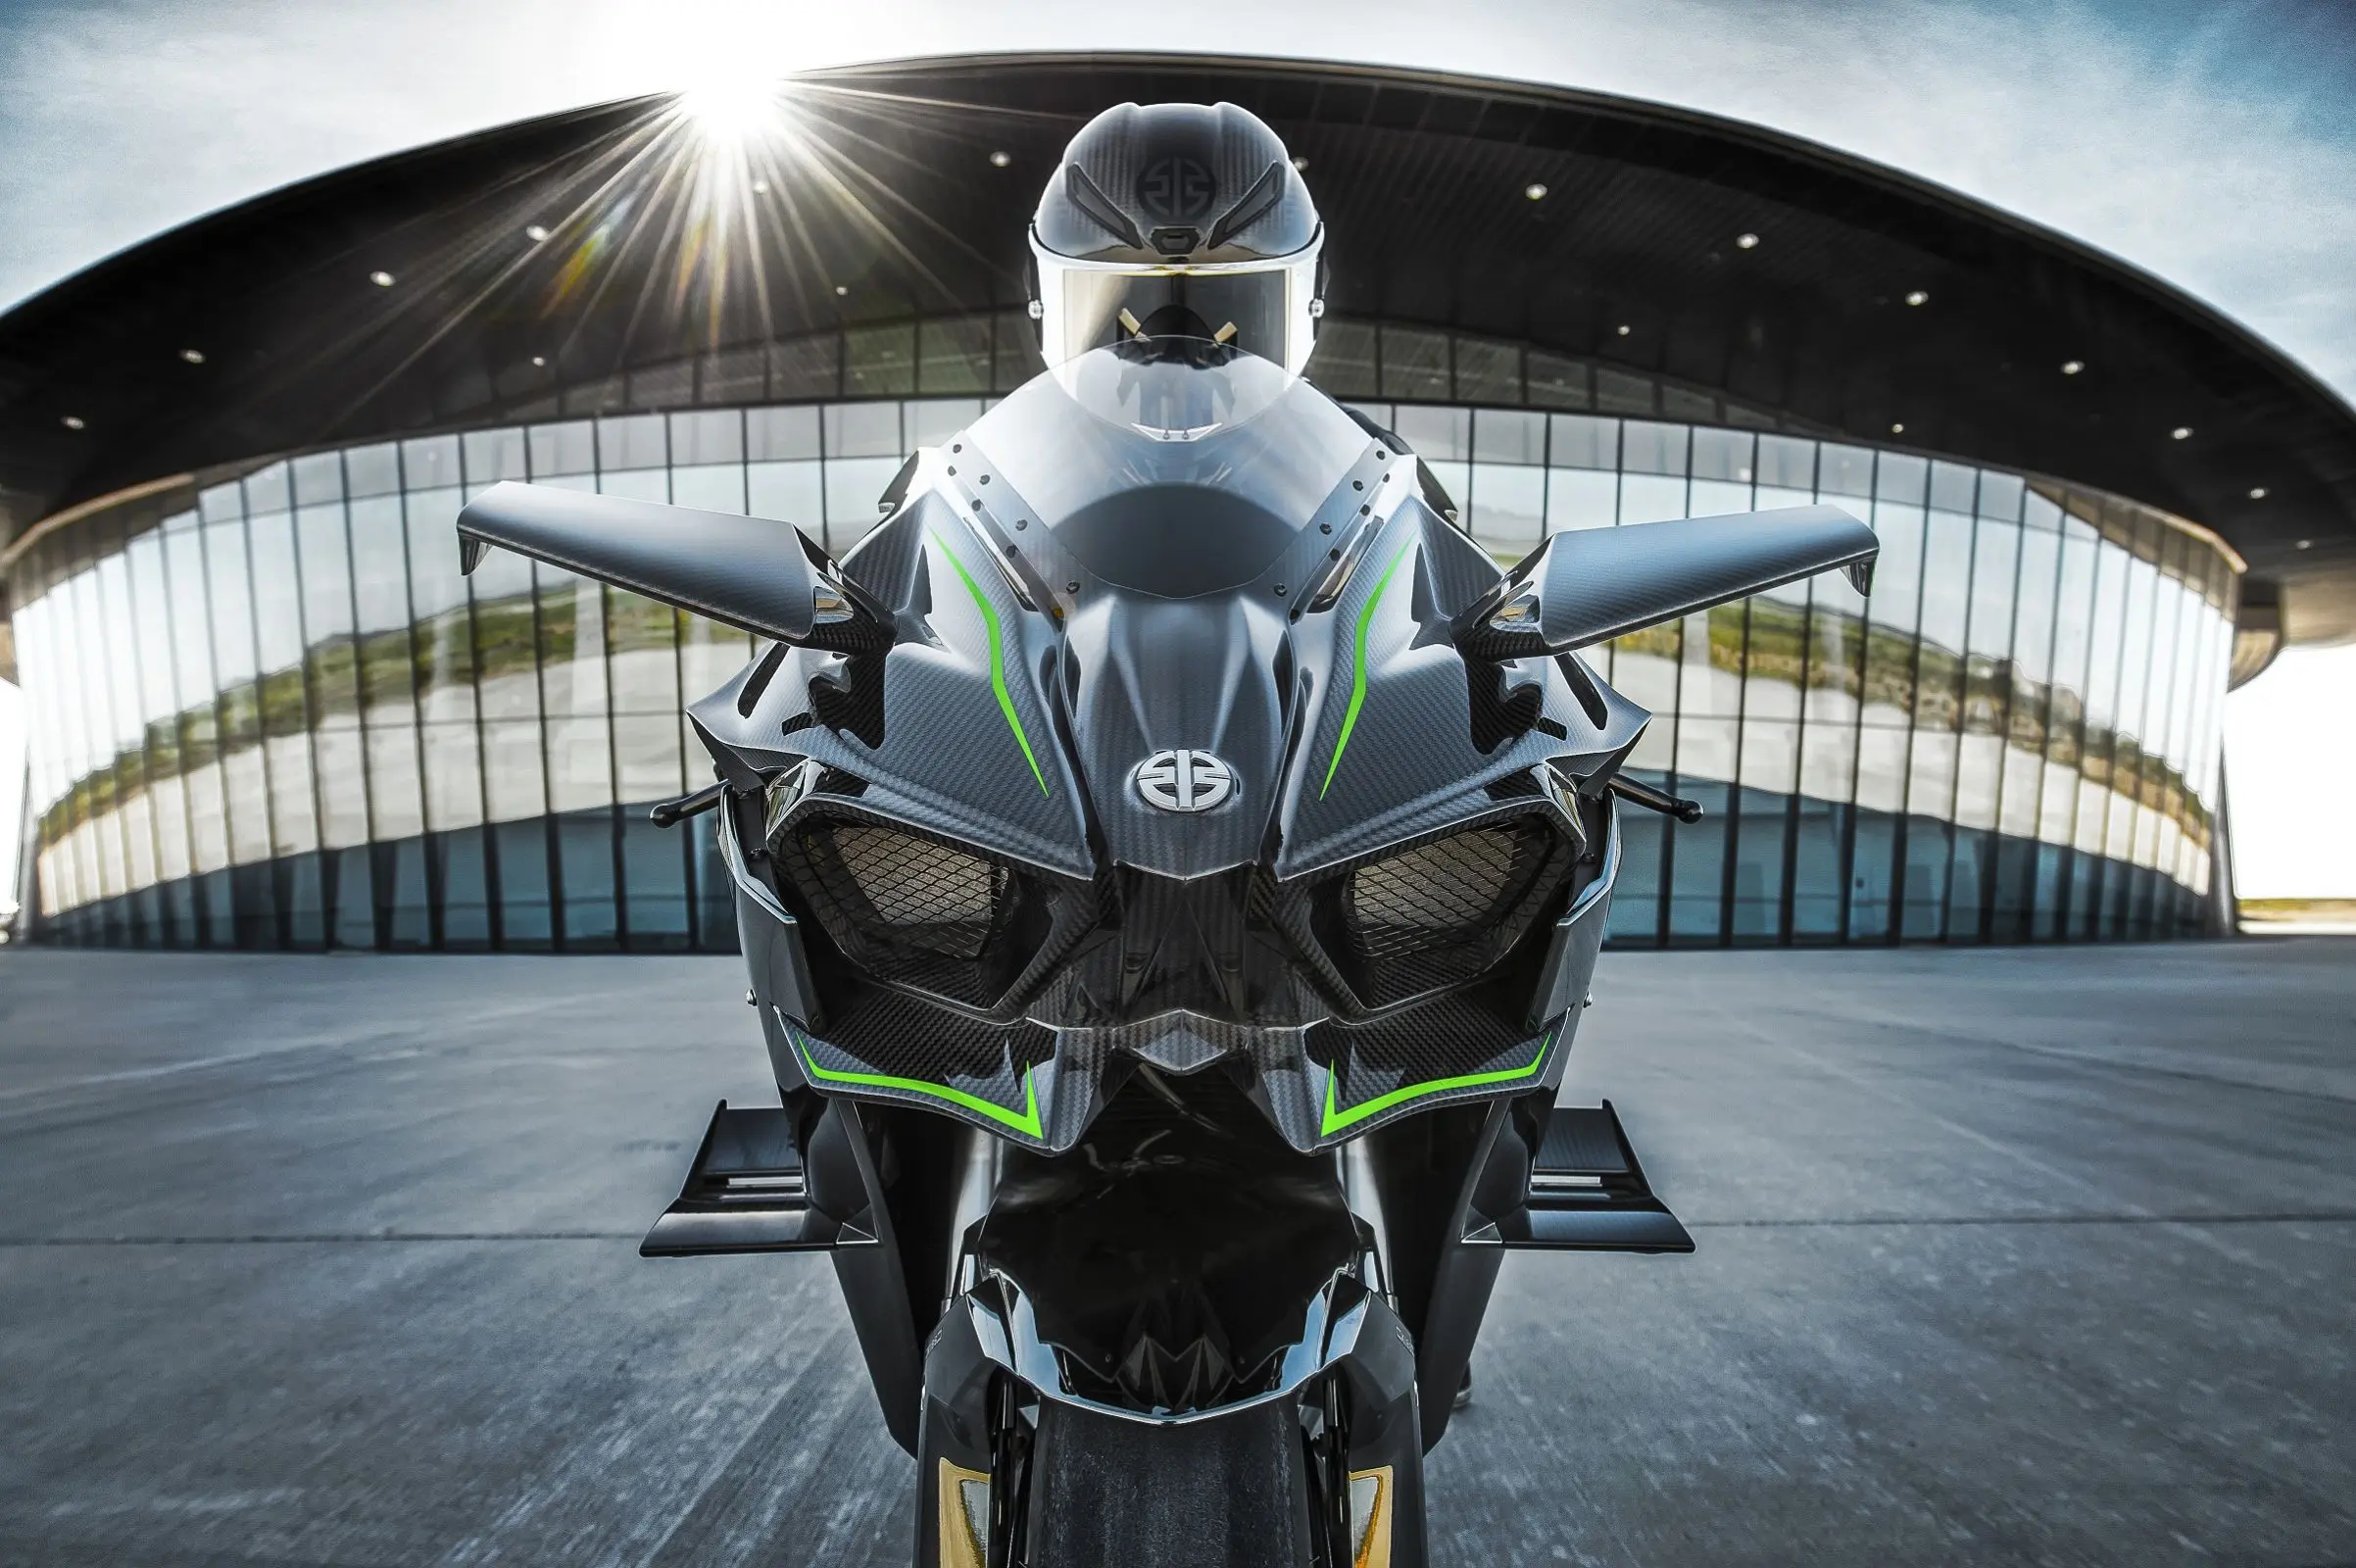 motos velocidade - Qual moto chega a 400 km h